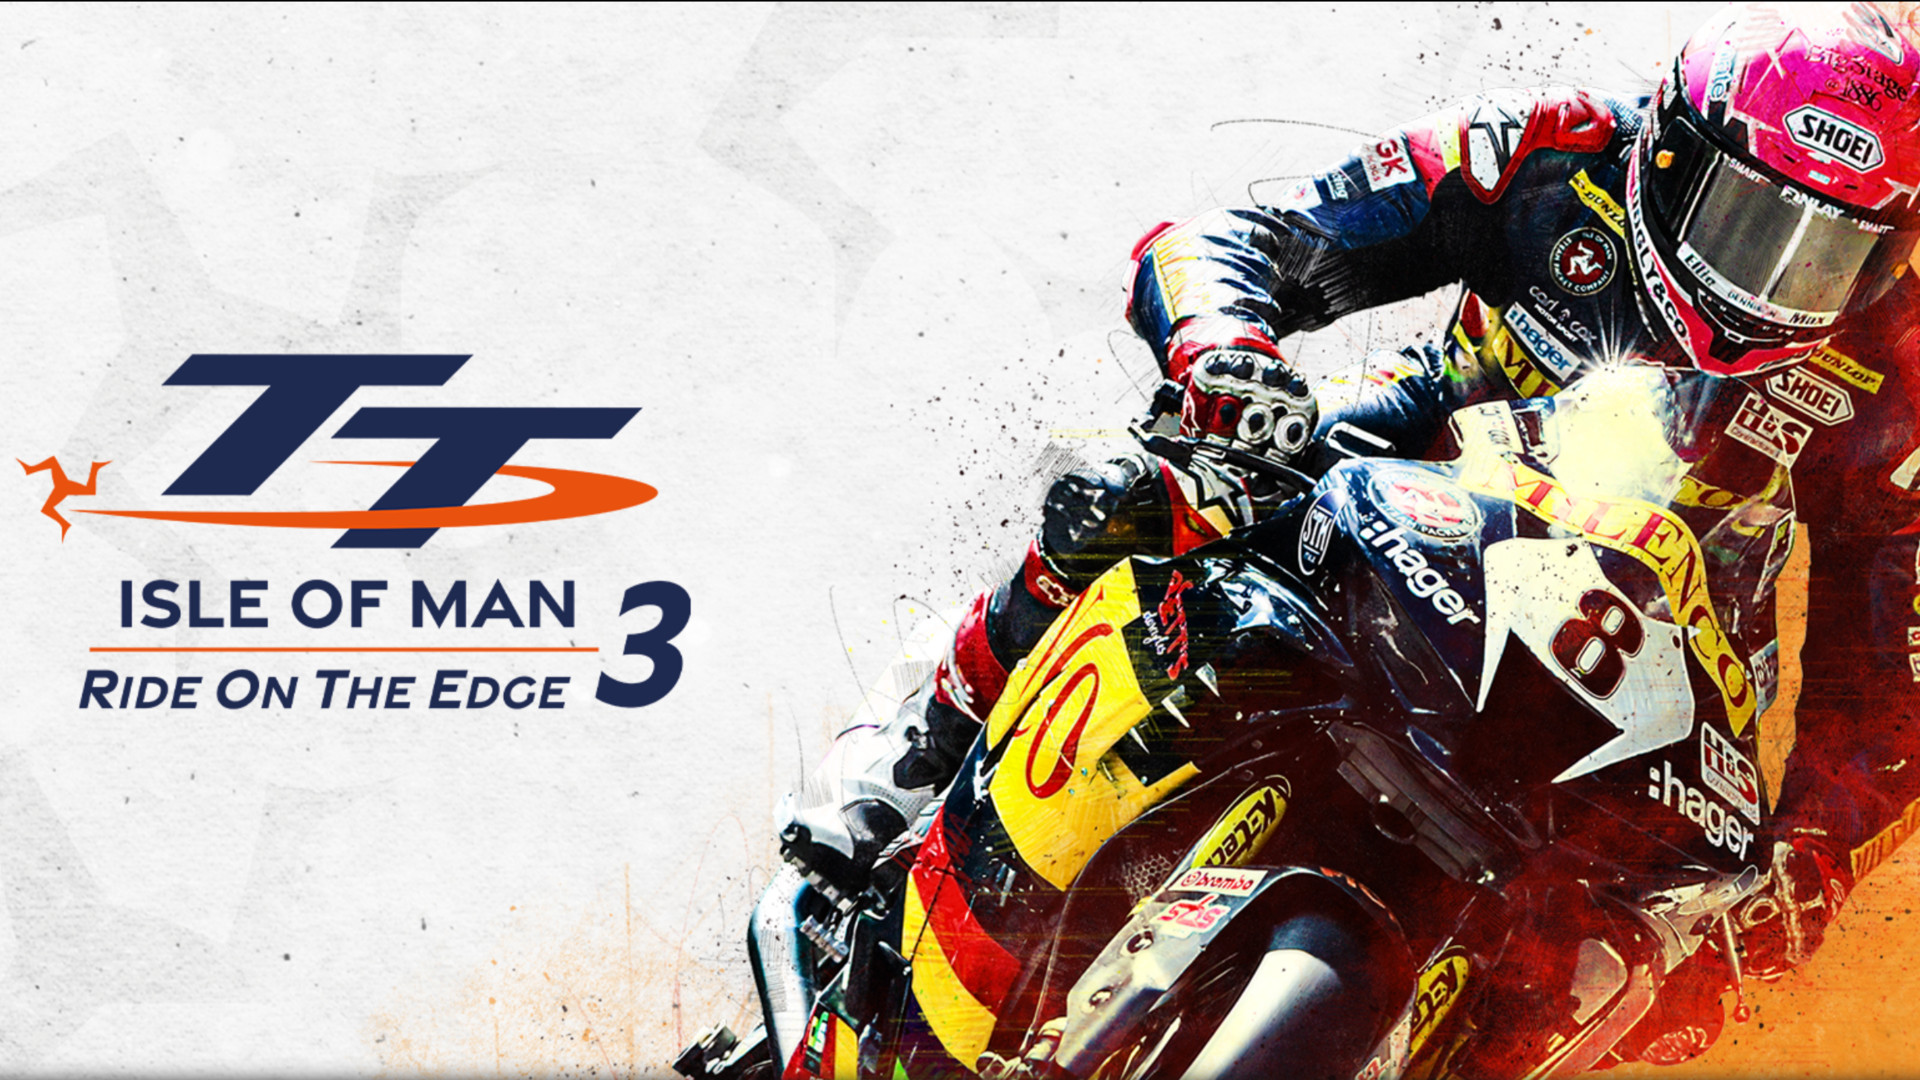 TT Isle of Man – Ride on the Edge 3 aangekondigd